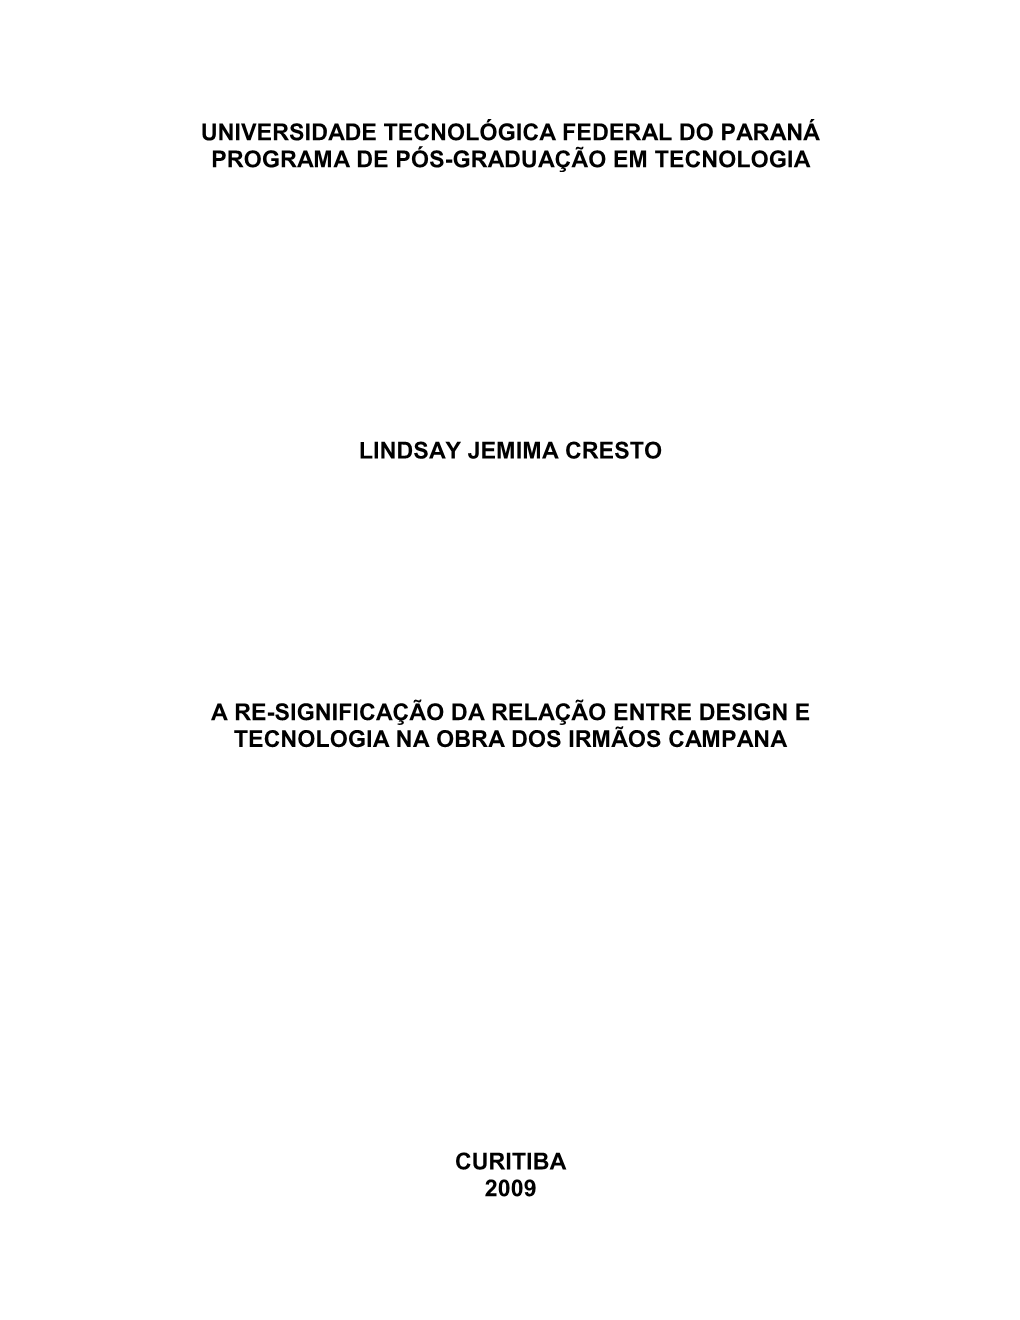 Universidade Tecnológica Federal Do Paraná Programa De Pós-Graduação Em Tecnologia